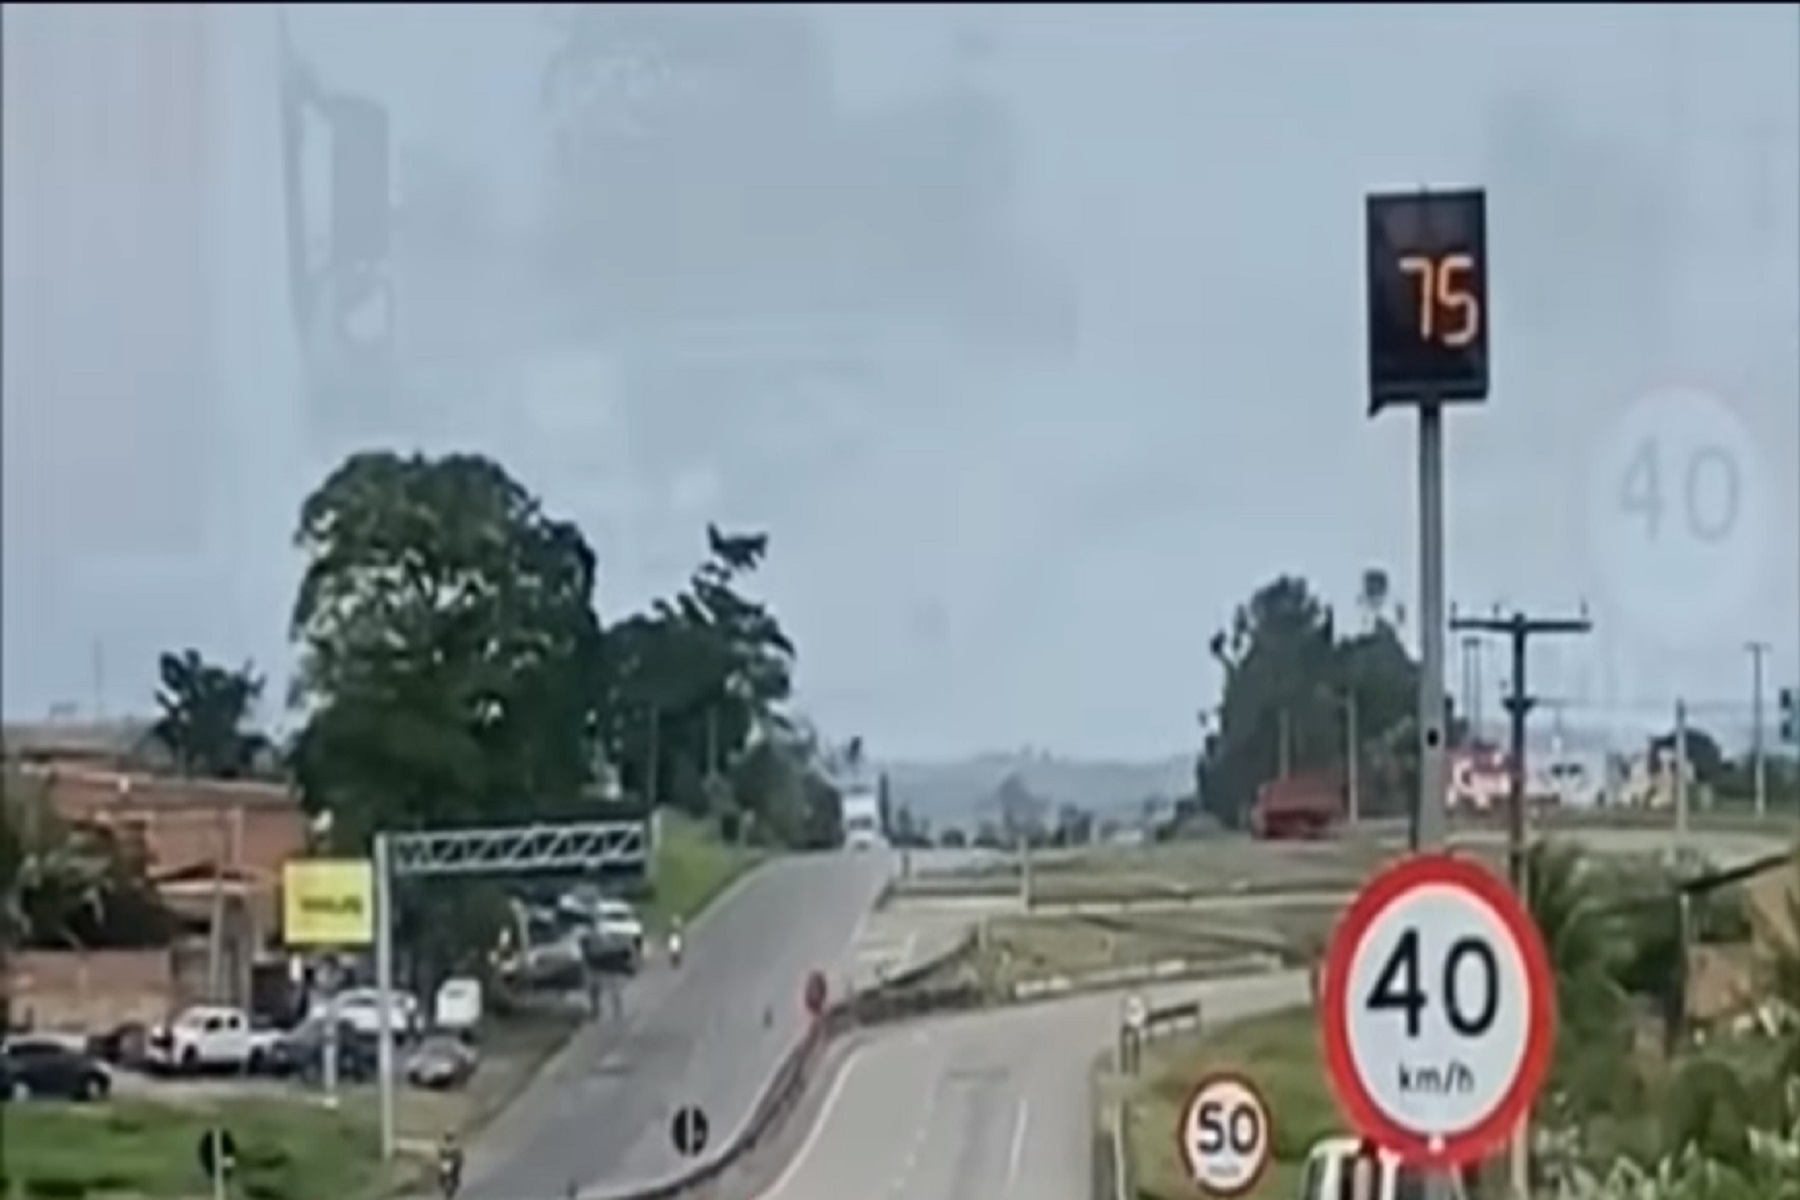 Radar em rodovia registra km/h acima da velocidade real dos veículos